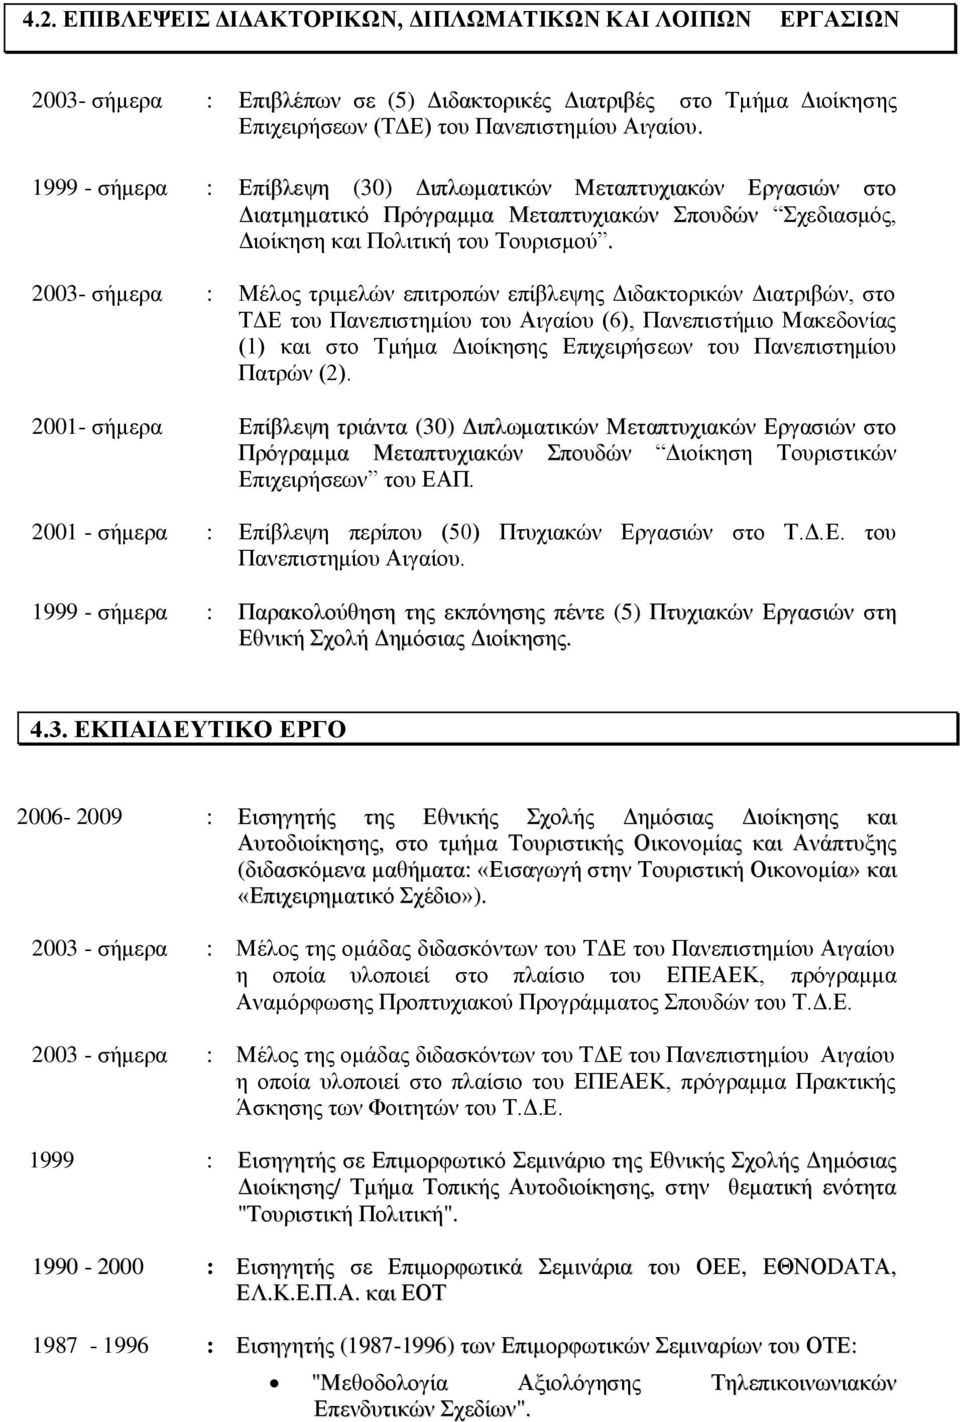 2003- ζήκεξα : Μέινο ηξηκειψλ επηηξνπψλ επίβιεςεο Γηδαθηνξηθψλ Γηαηξηβψλ, ζην ΣΓΔ ηνπ Παλεπηζηεκίνπ ηνπ Αηγαίνπ (6), Παλεπηζηήκην Μαθεδνλίαο (1) θαη ζην Σκήκα Γηνίθεζεο Δπηρεηξήζεσλ ηνπ Παλεπηζηεκίνπ